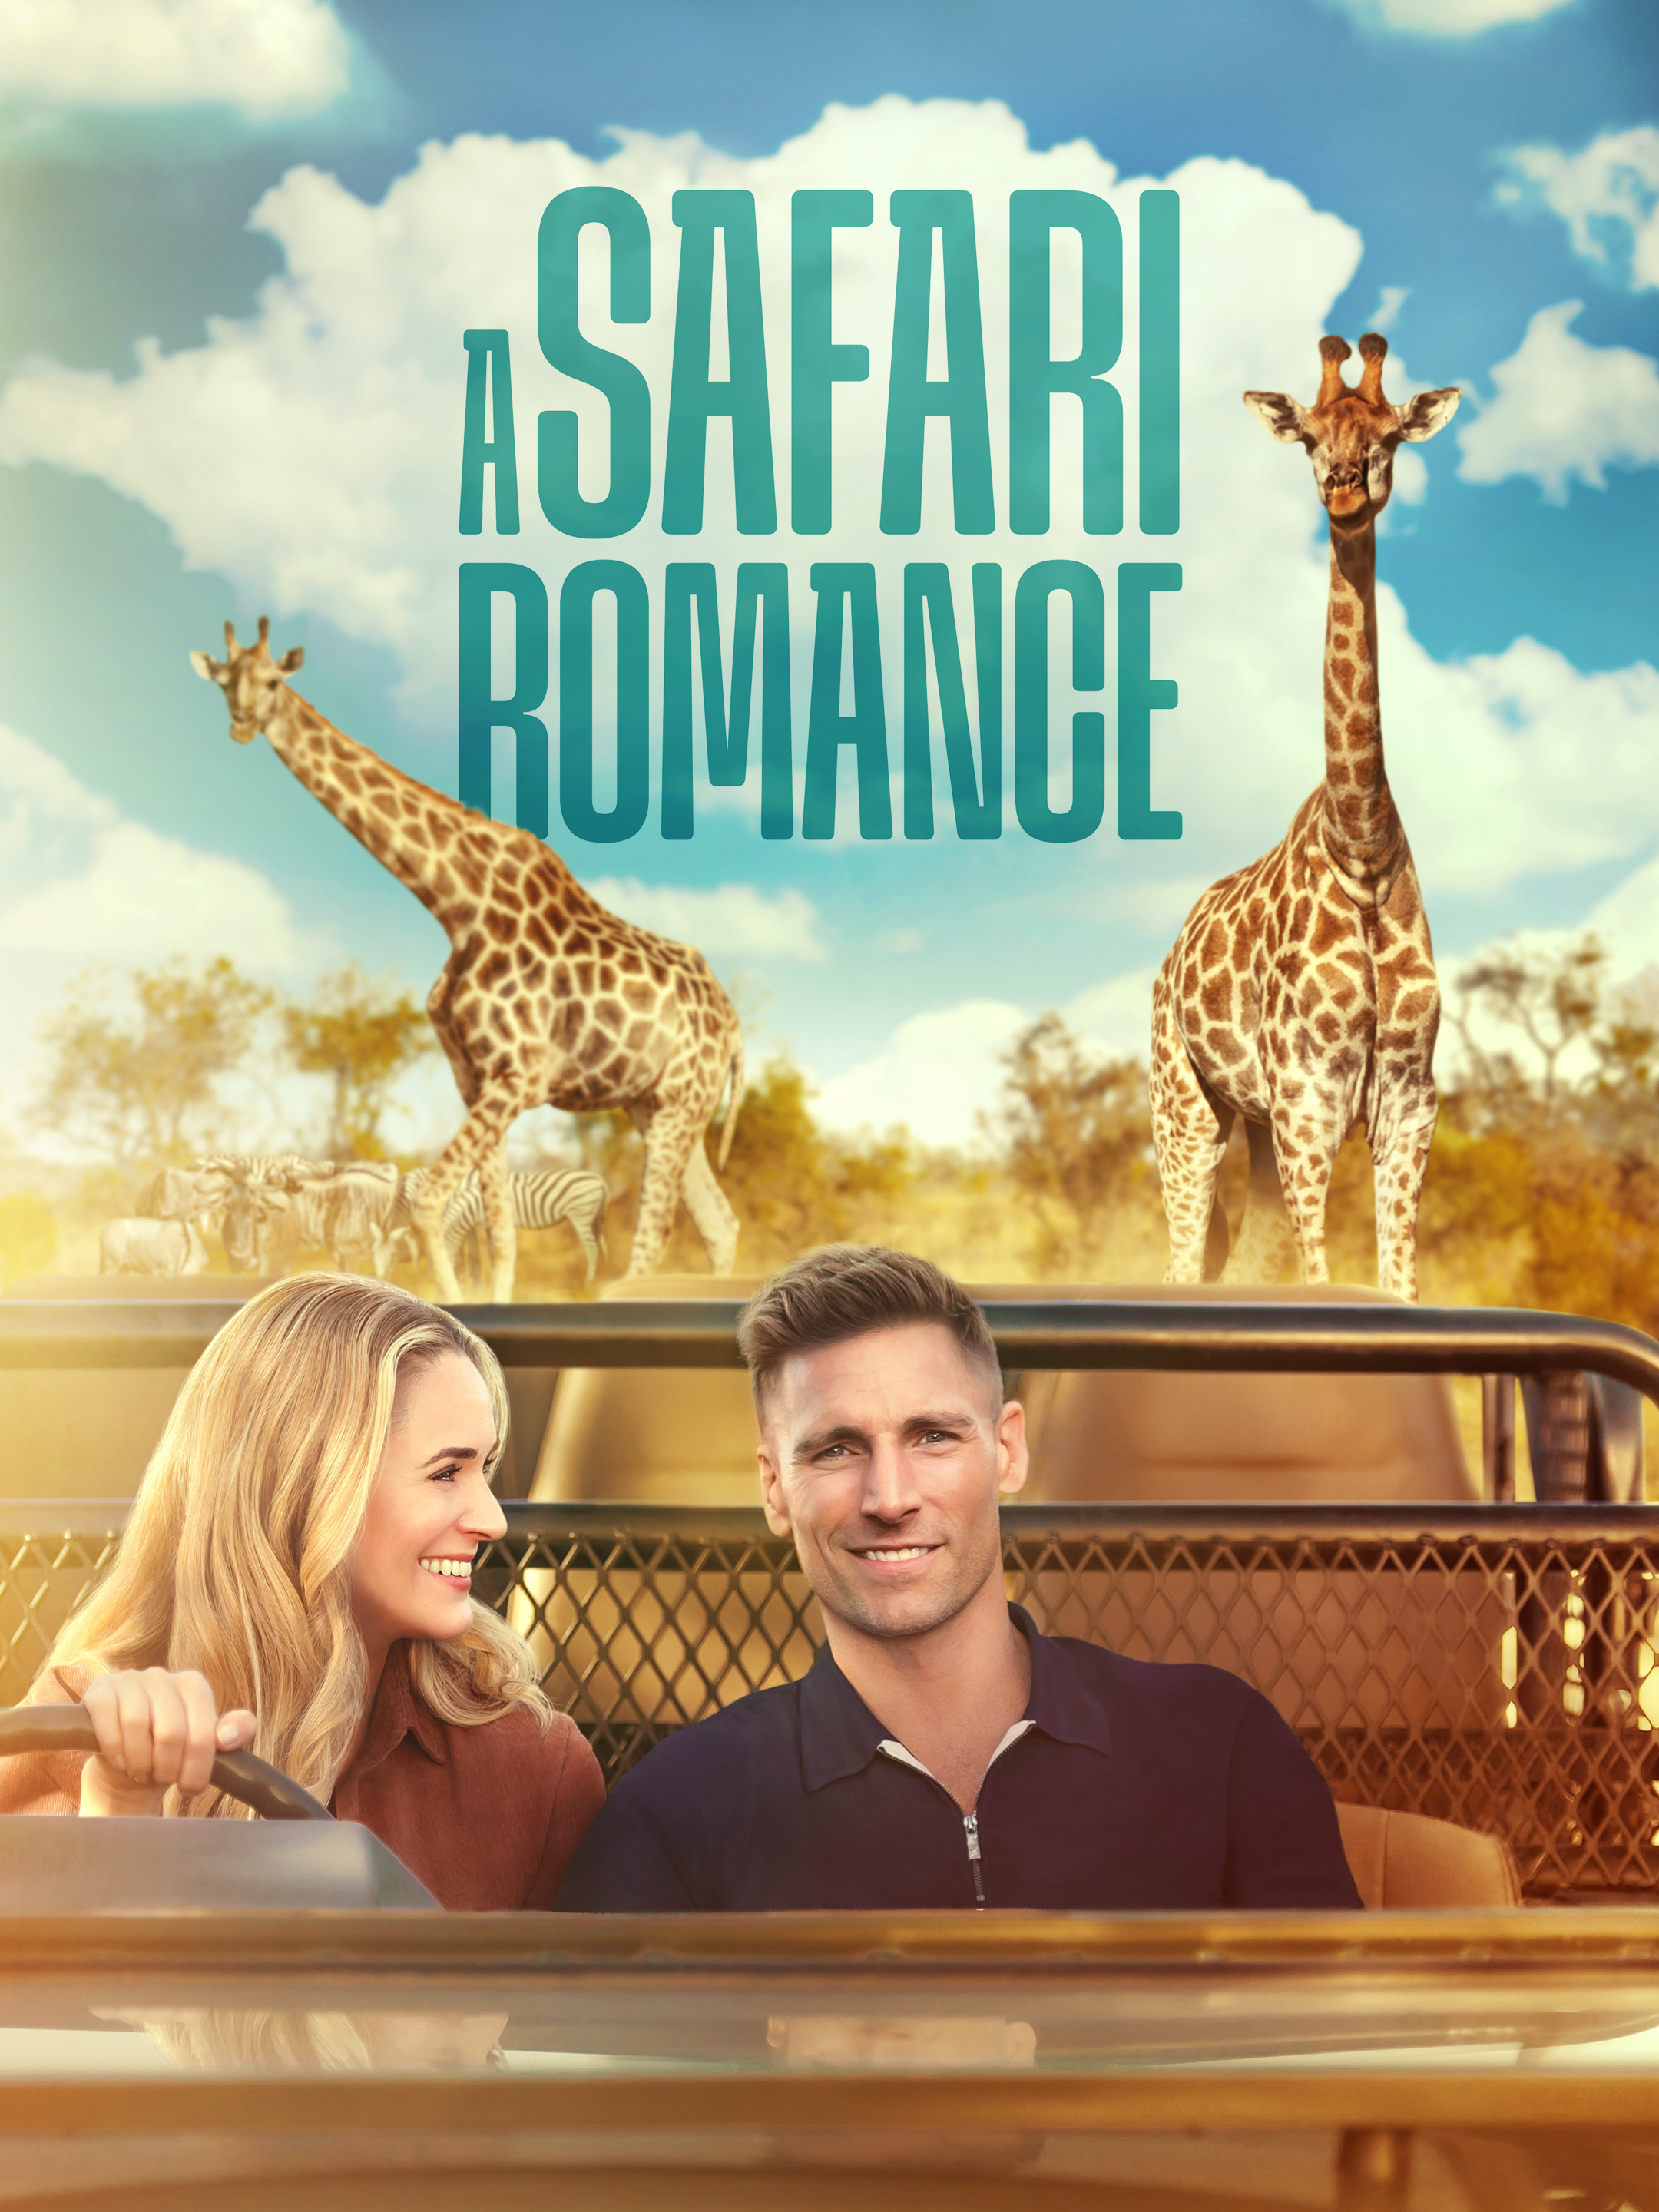 A Safari Romance picture